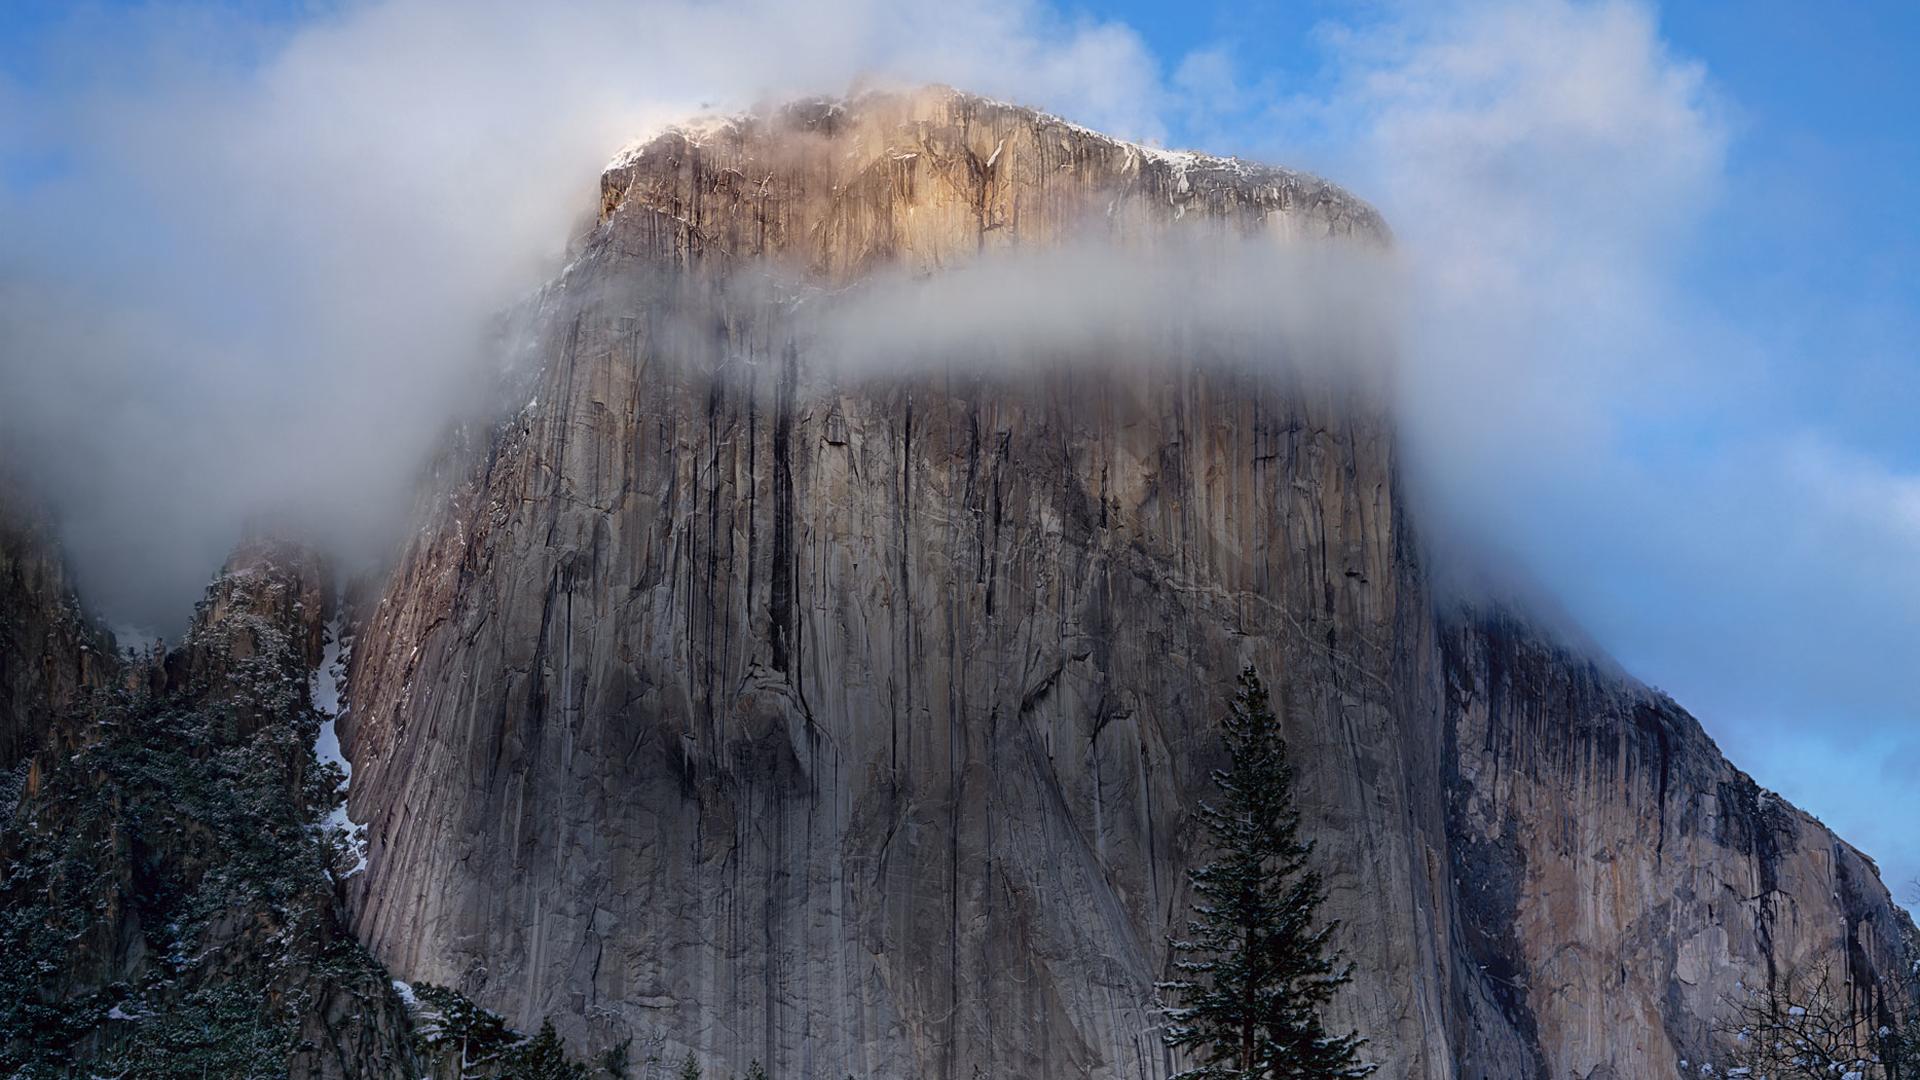 Wallpaper Als Schreibtischhintergrund Festlegen Os X Yosemite